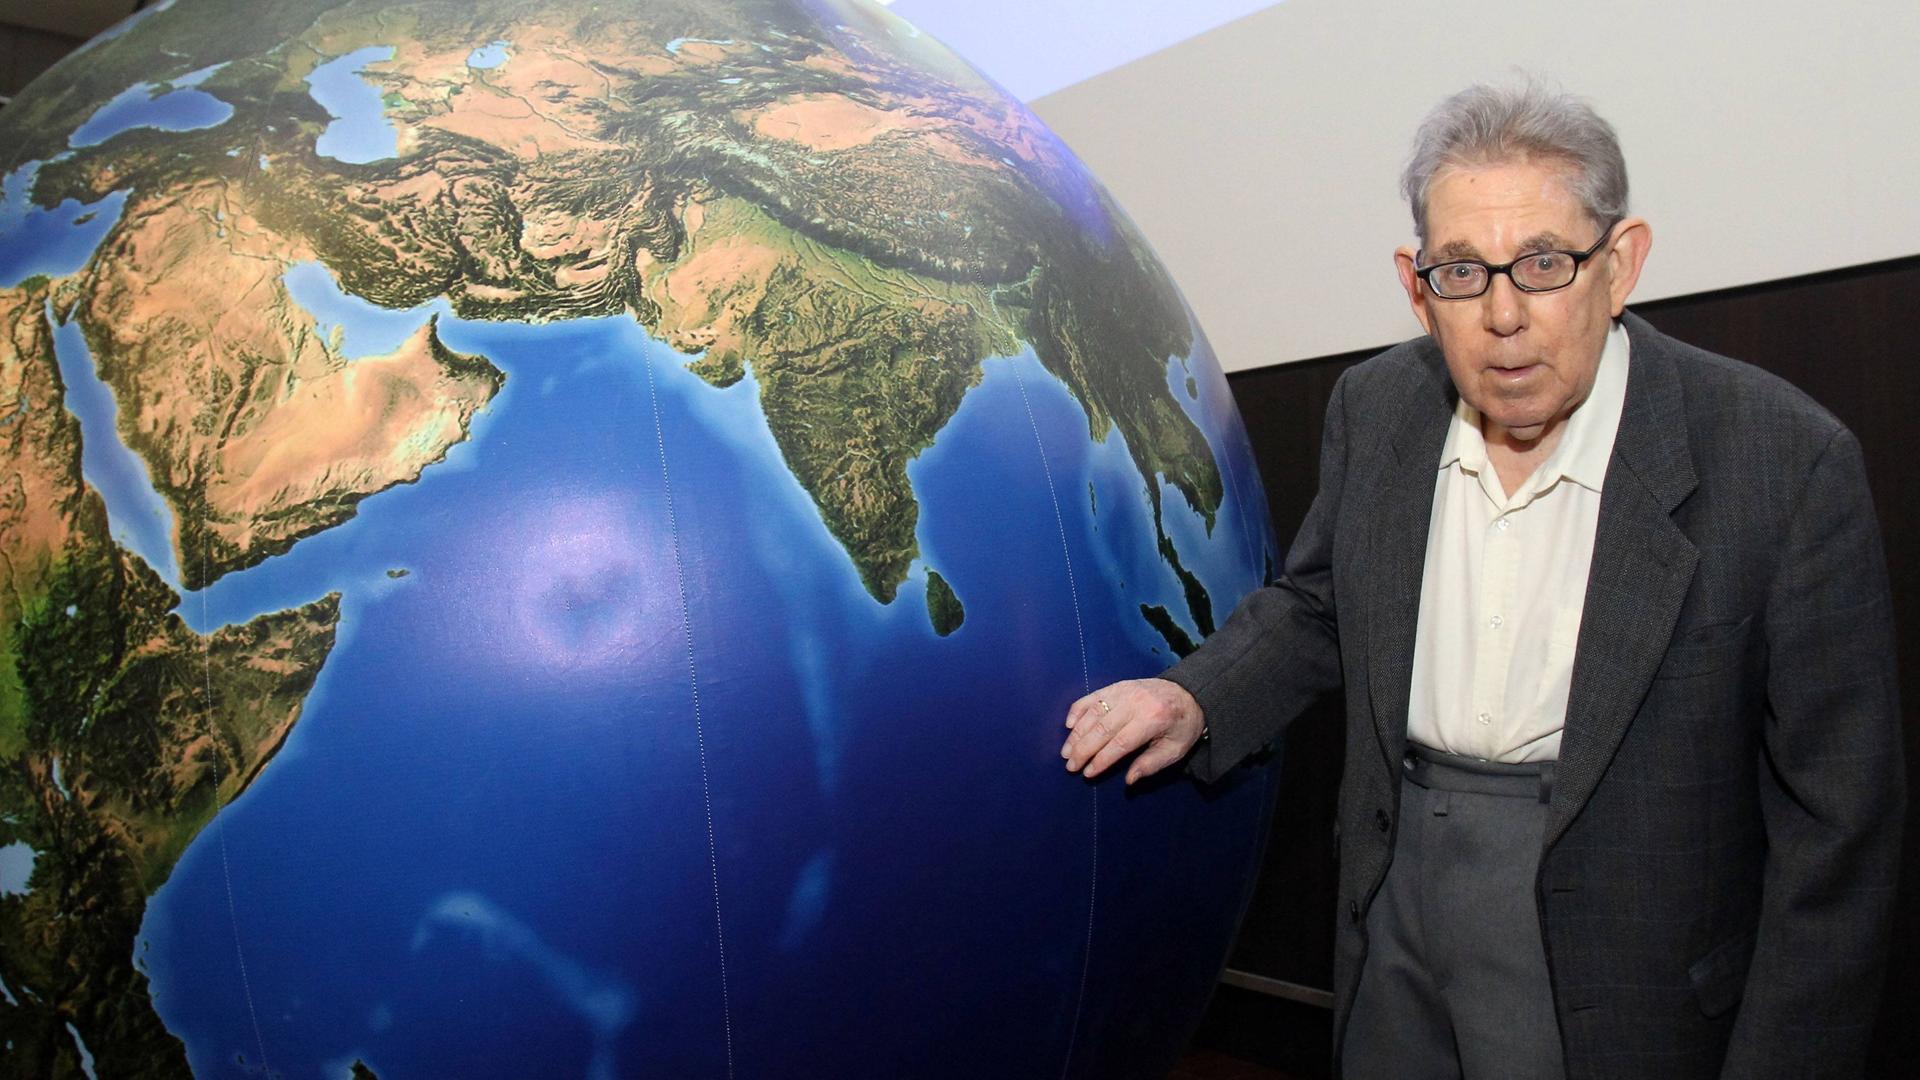 Der niederländische Meteorologe Paul Crutzen beim Geocycles Symposium 2012 an der Fachhochschule Mainz (FH). Er war von 1980 bis 2000 Direktor am Max-Planck-Institut für Chemie in Mainz und erhielt 1995 für seine Arbeiten im Gebiet der Atmosphärenchemie den Nobelpreis für Chemie.